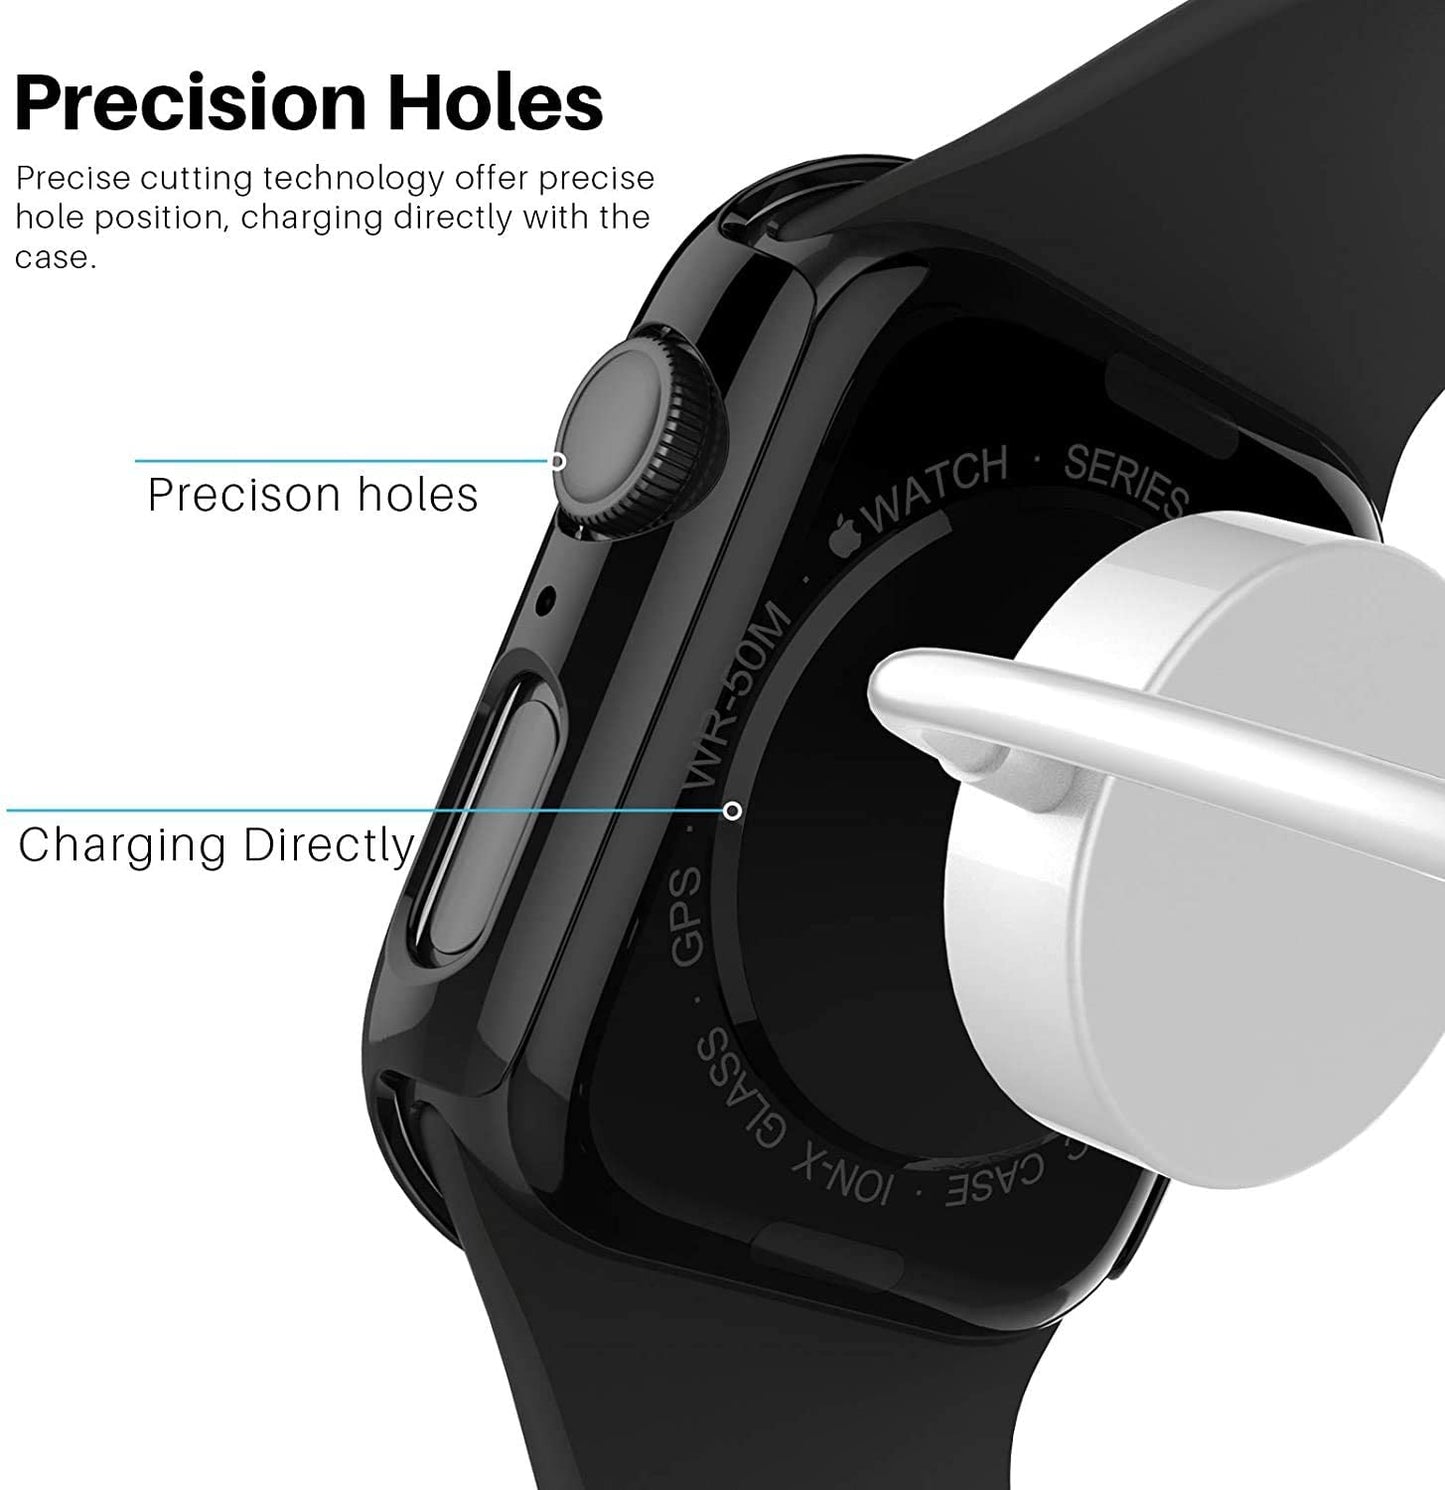 Apple Watch Glass Case